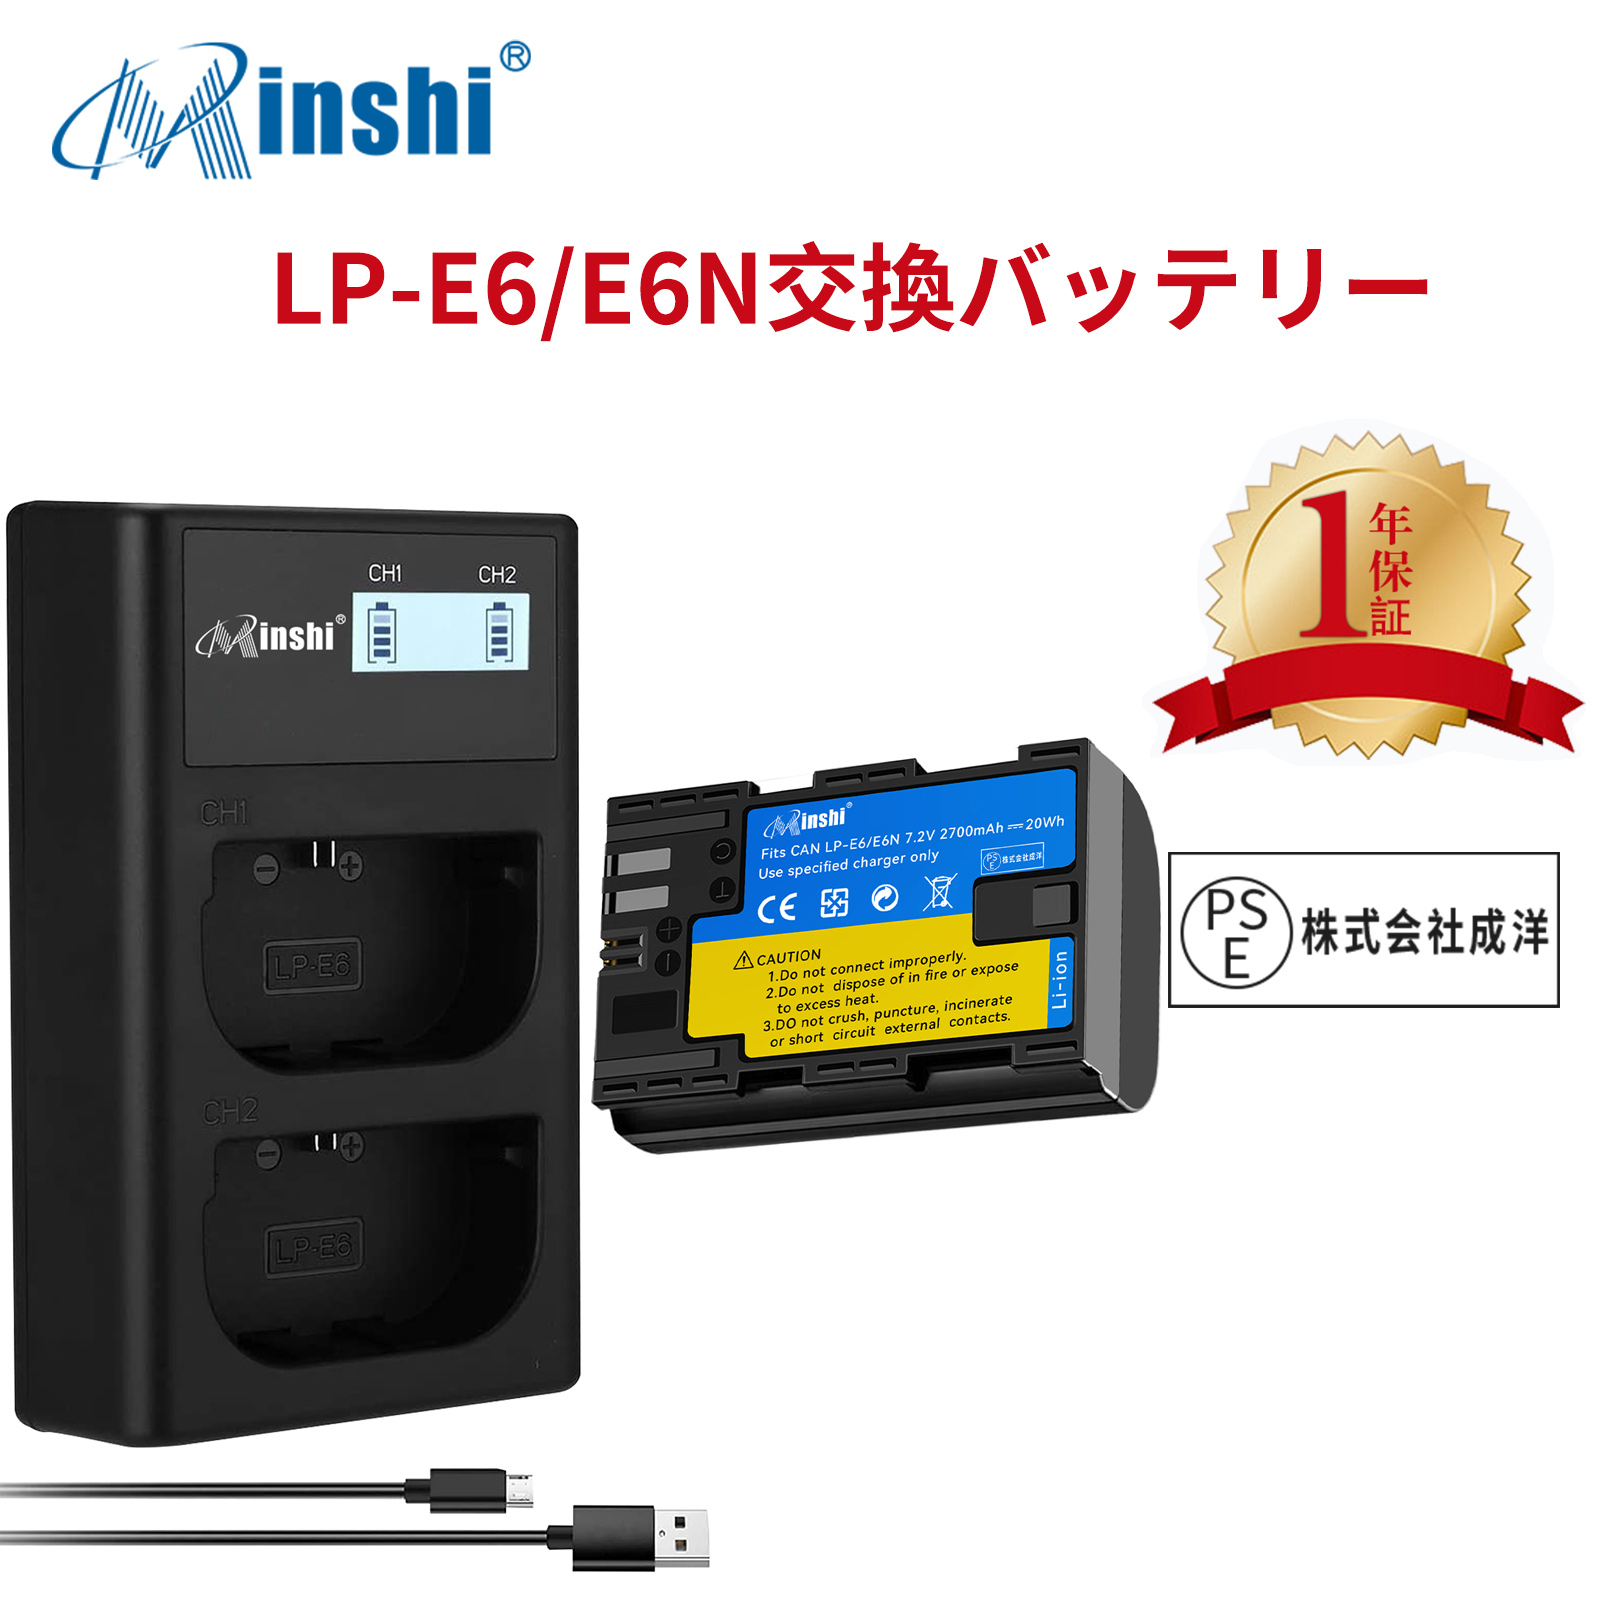 【1年保証】minshi Canon EOS 70D LP-E6  LP-E6N EOS6D CANON 80D 【2700mAh 7.2V 】【互換急速USBチャージャー】高品質 LP-E6NH 交換用バッテリー